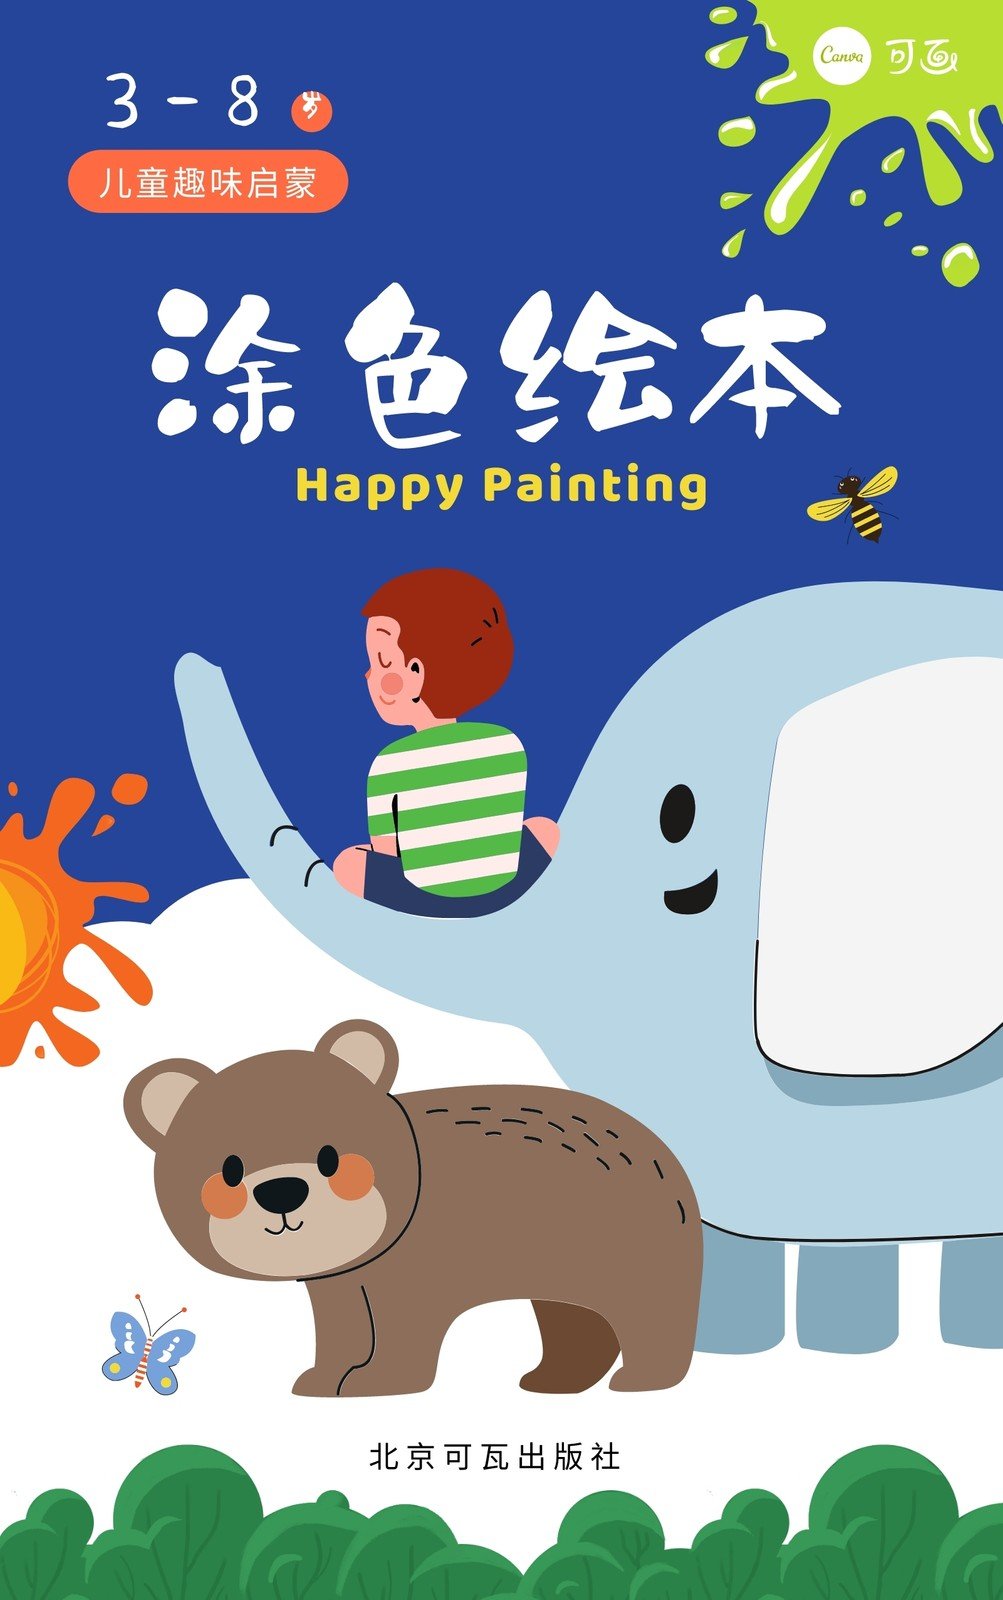 蓝绿色涂色绘本动物大象熊小男孩插画卡通艺术介绍中文书籍封面